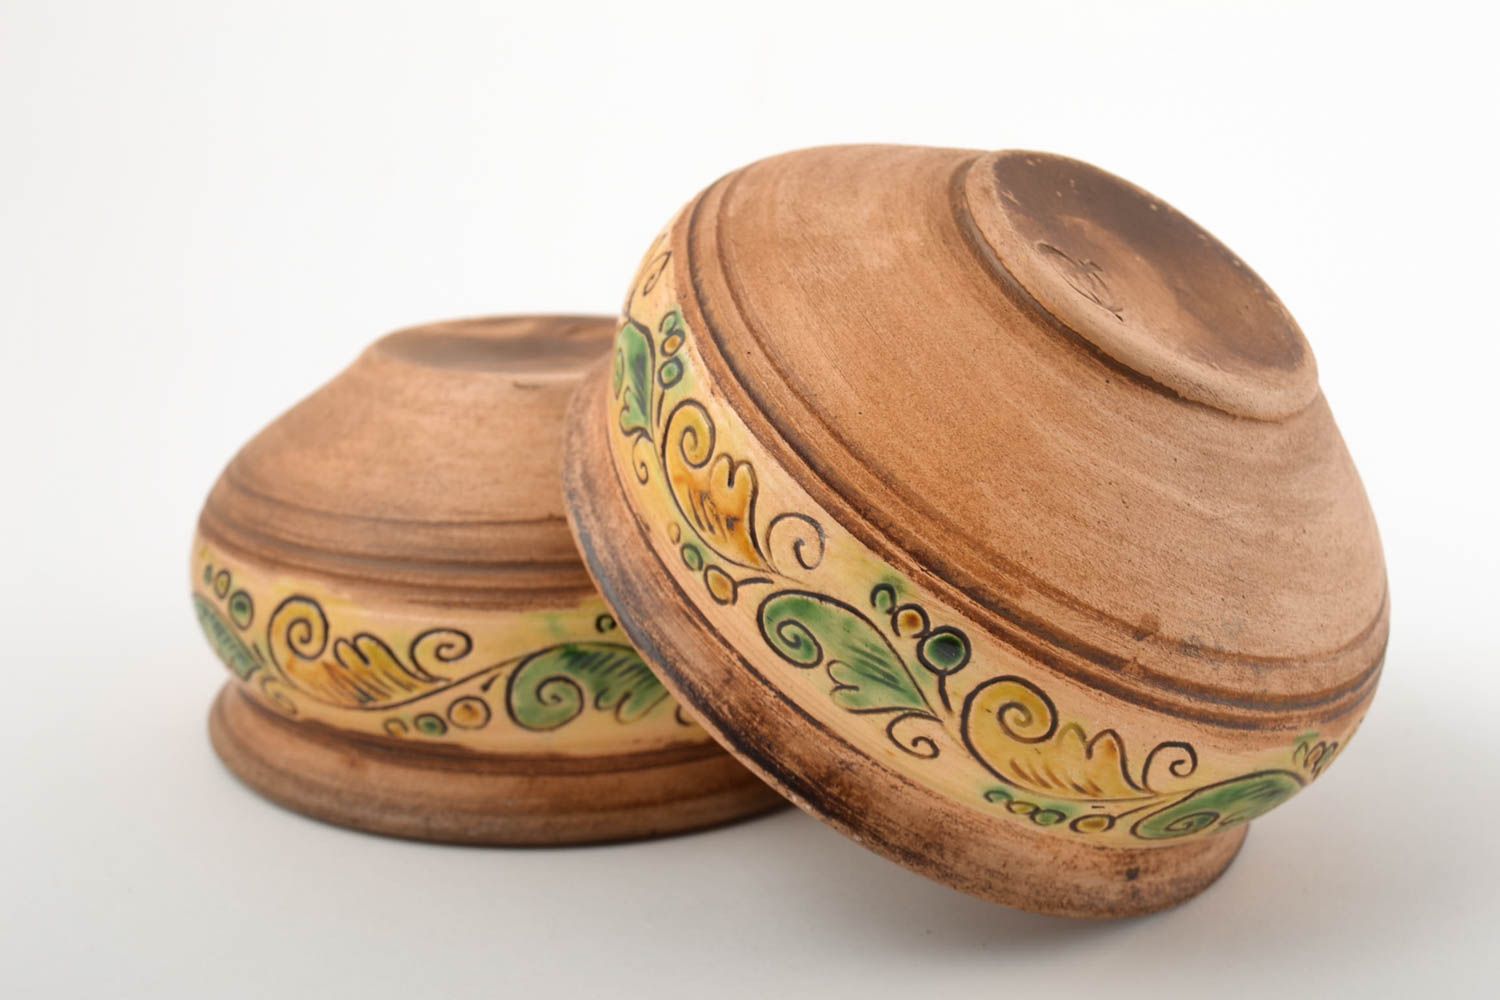 Ceramic bowls 2 ceramic plates handmade stoneware dinnerware dinner dishes photo 4